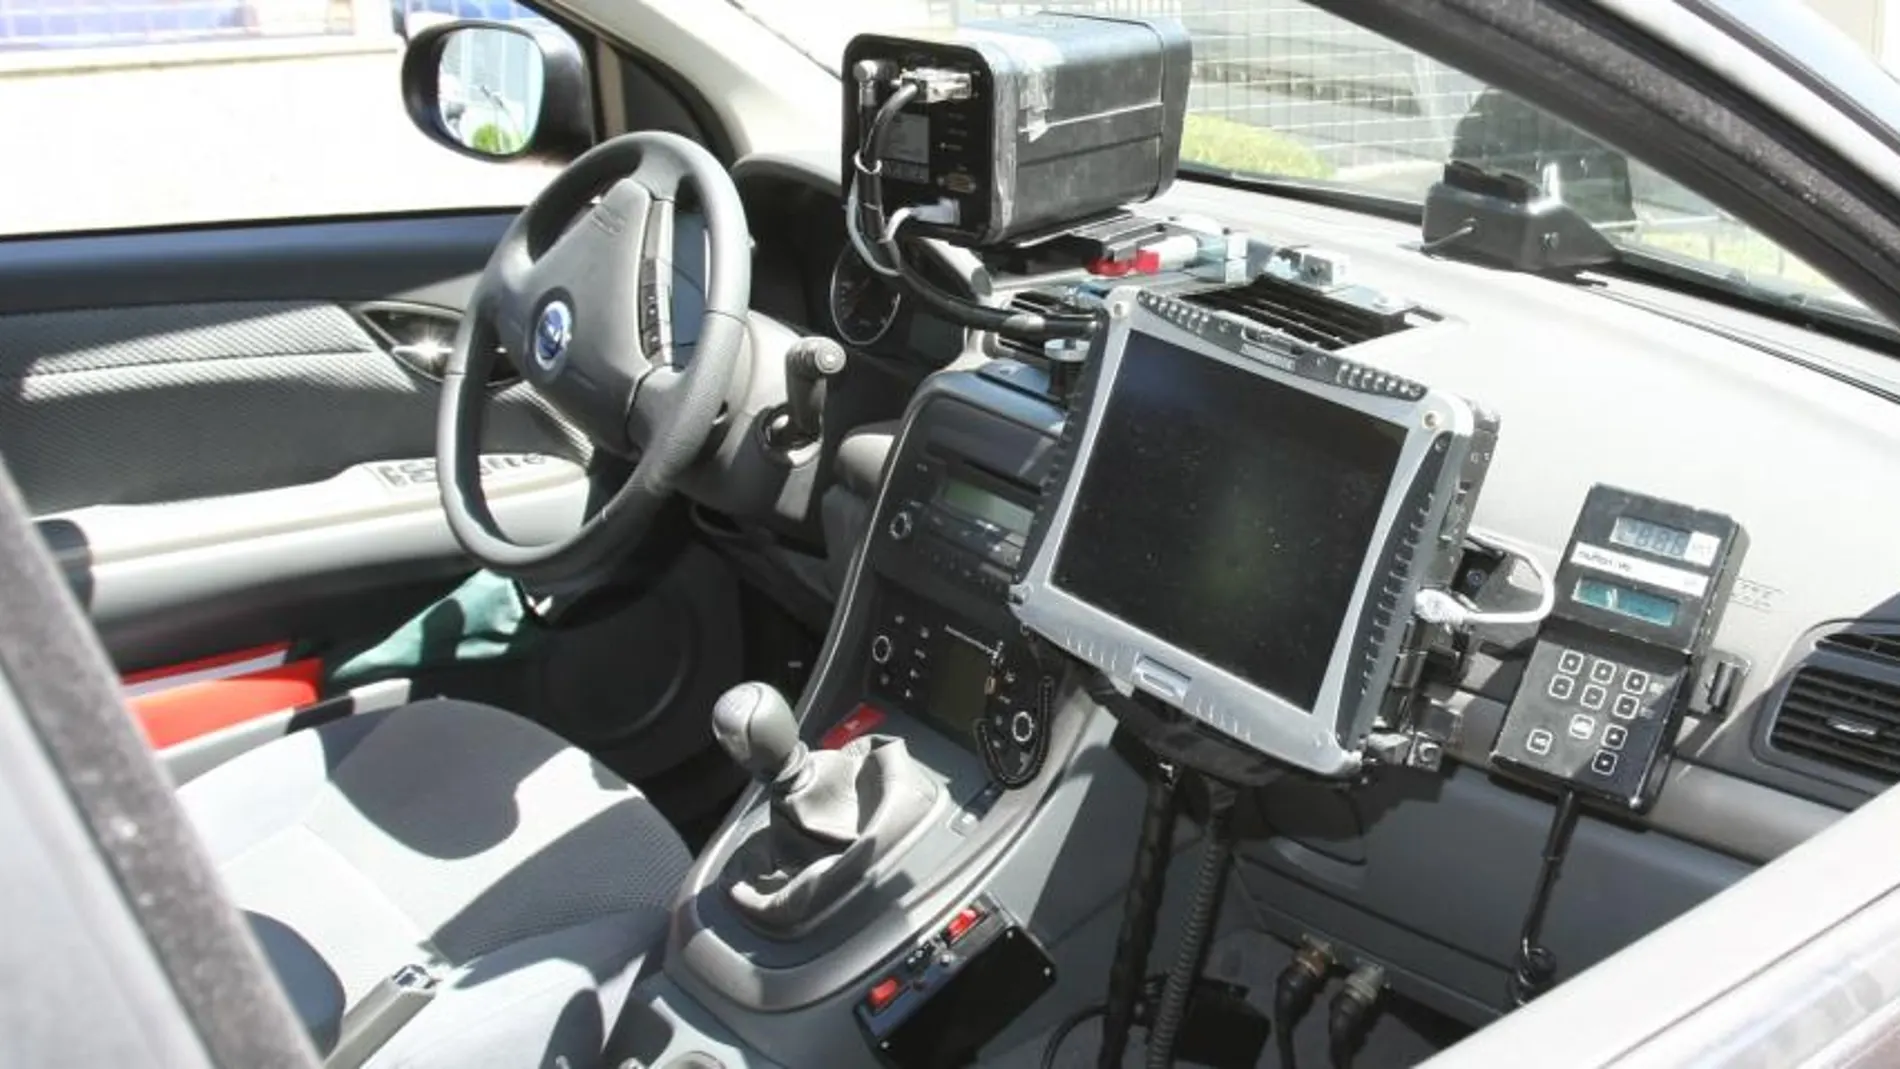 Imagen de un radar móvil instalado en un coche de la Guardia Civil camuflado